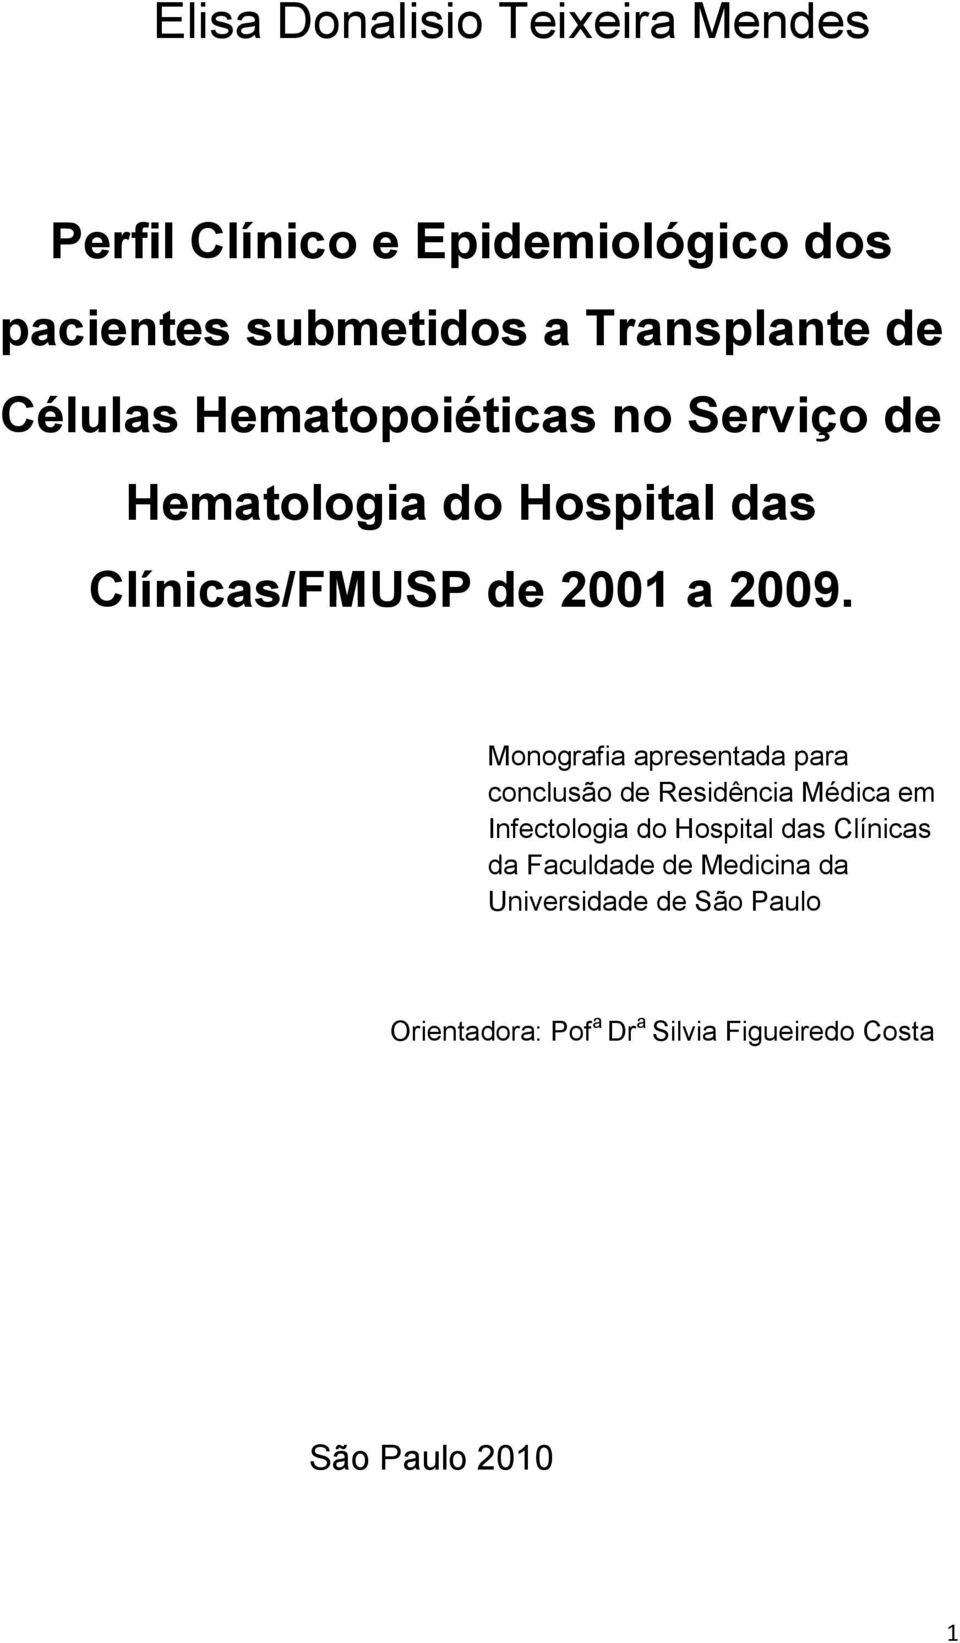 Monografia apresentada para conclusão de Residência Médica em Infectologia do Hospital das Clínicas da